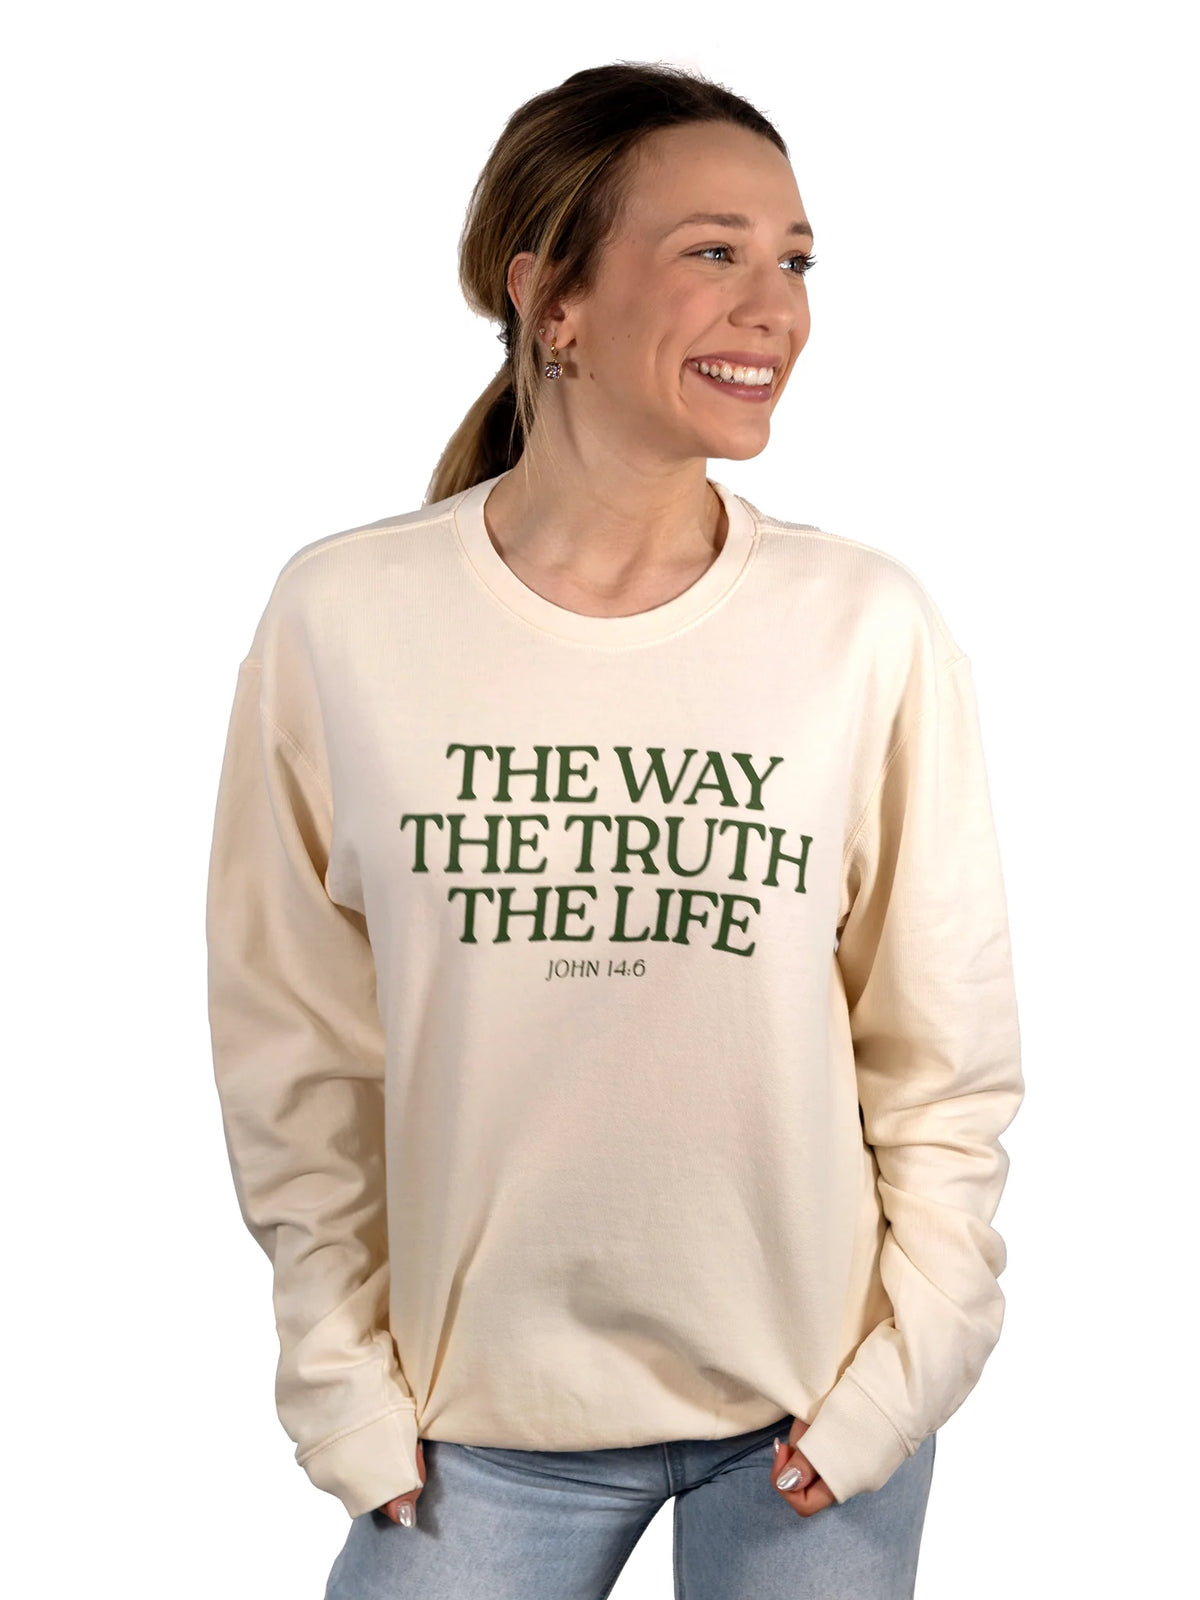 The Life Sweatshirt